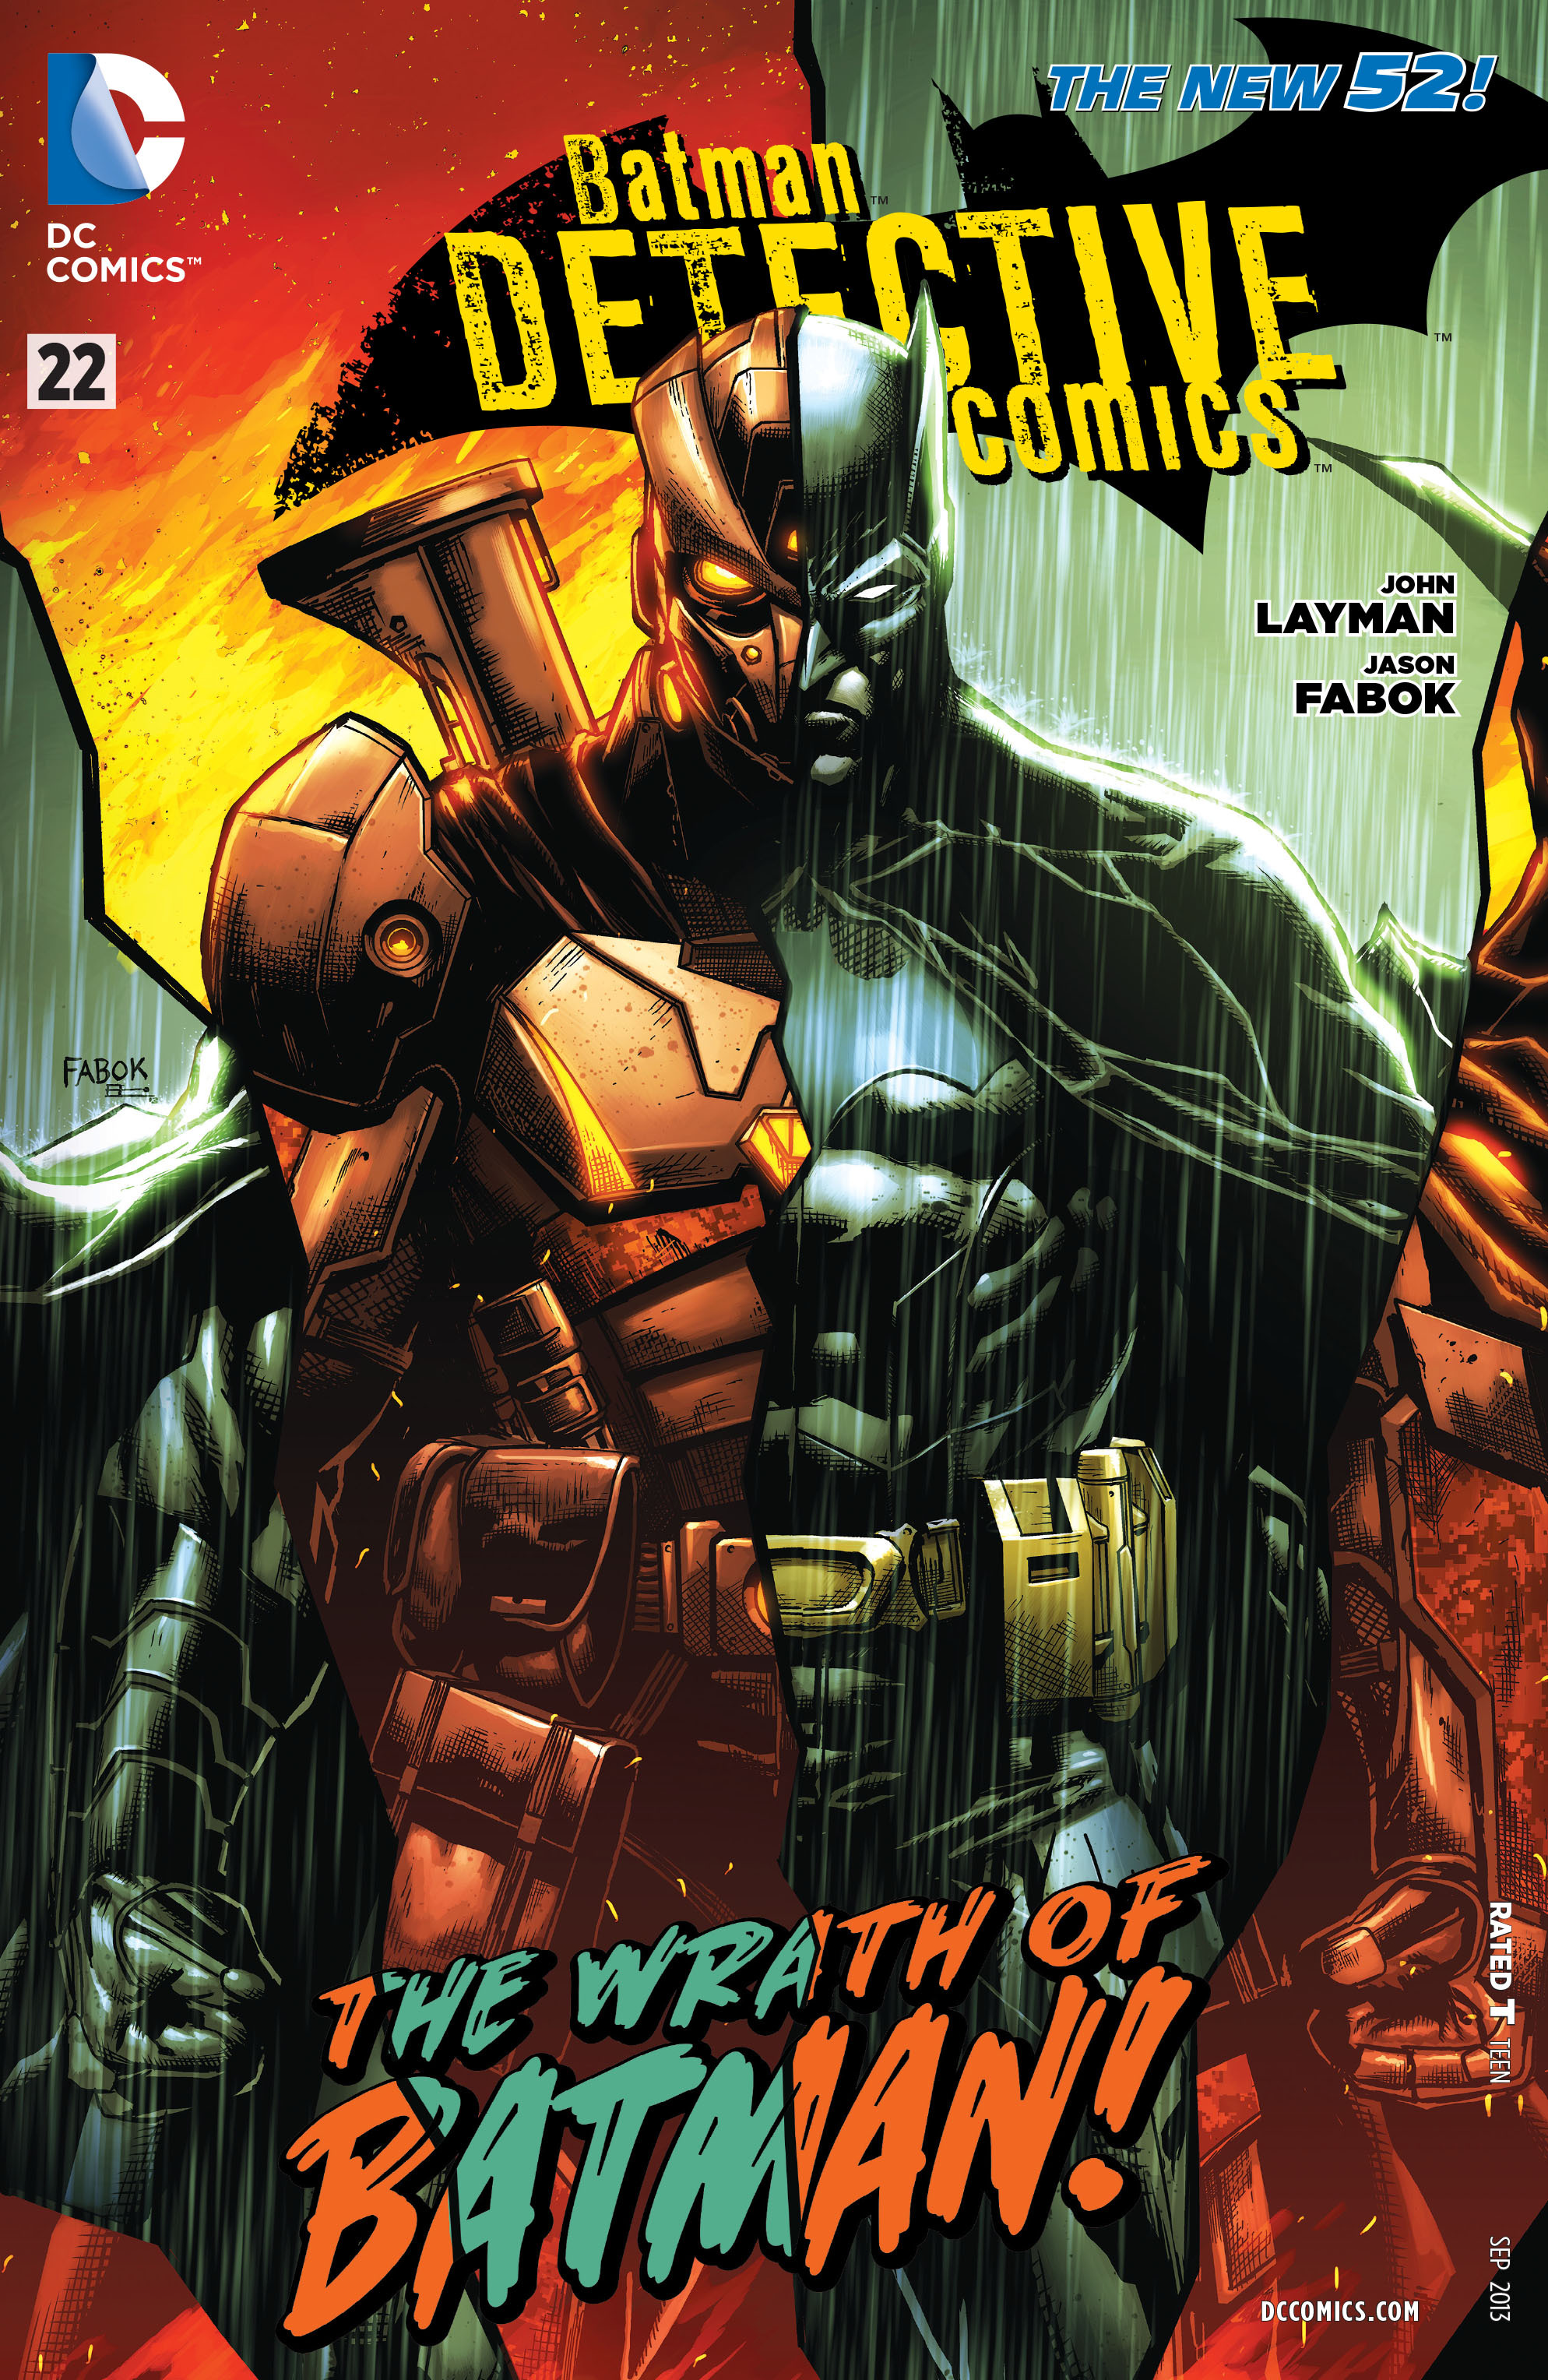 DC Comics BATMAN DETECTIVE COMICS Volume 2 Lot of 40 The New 52! 